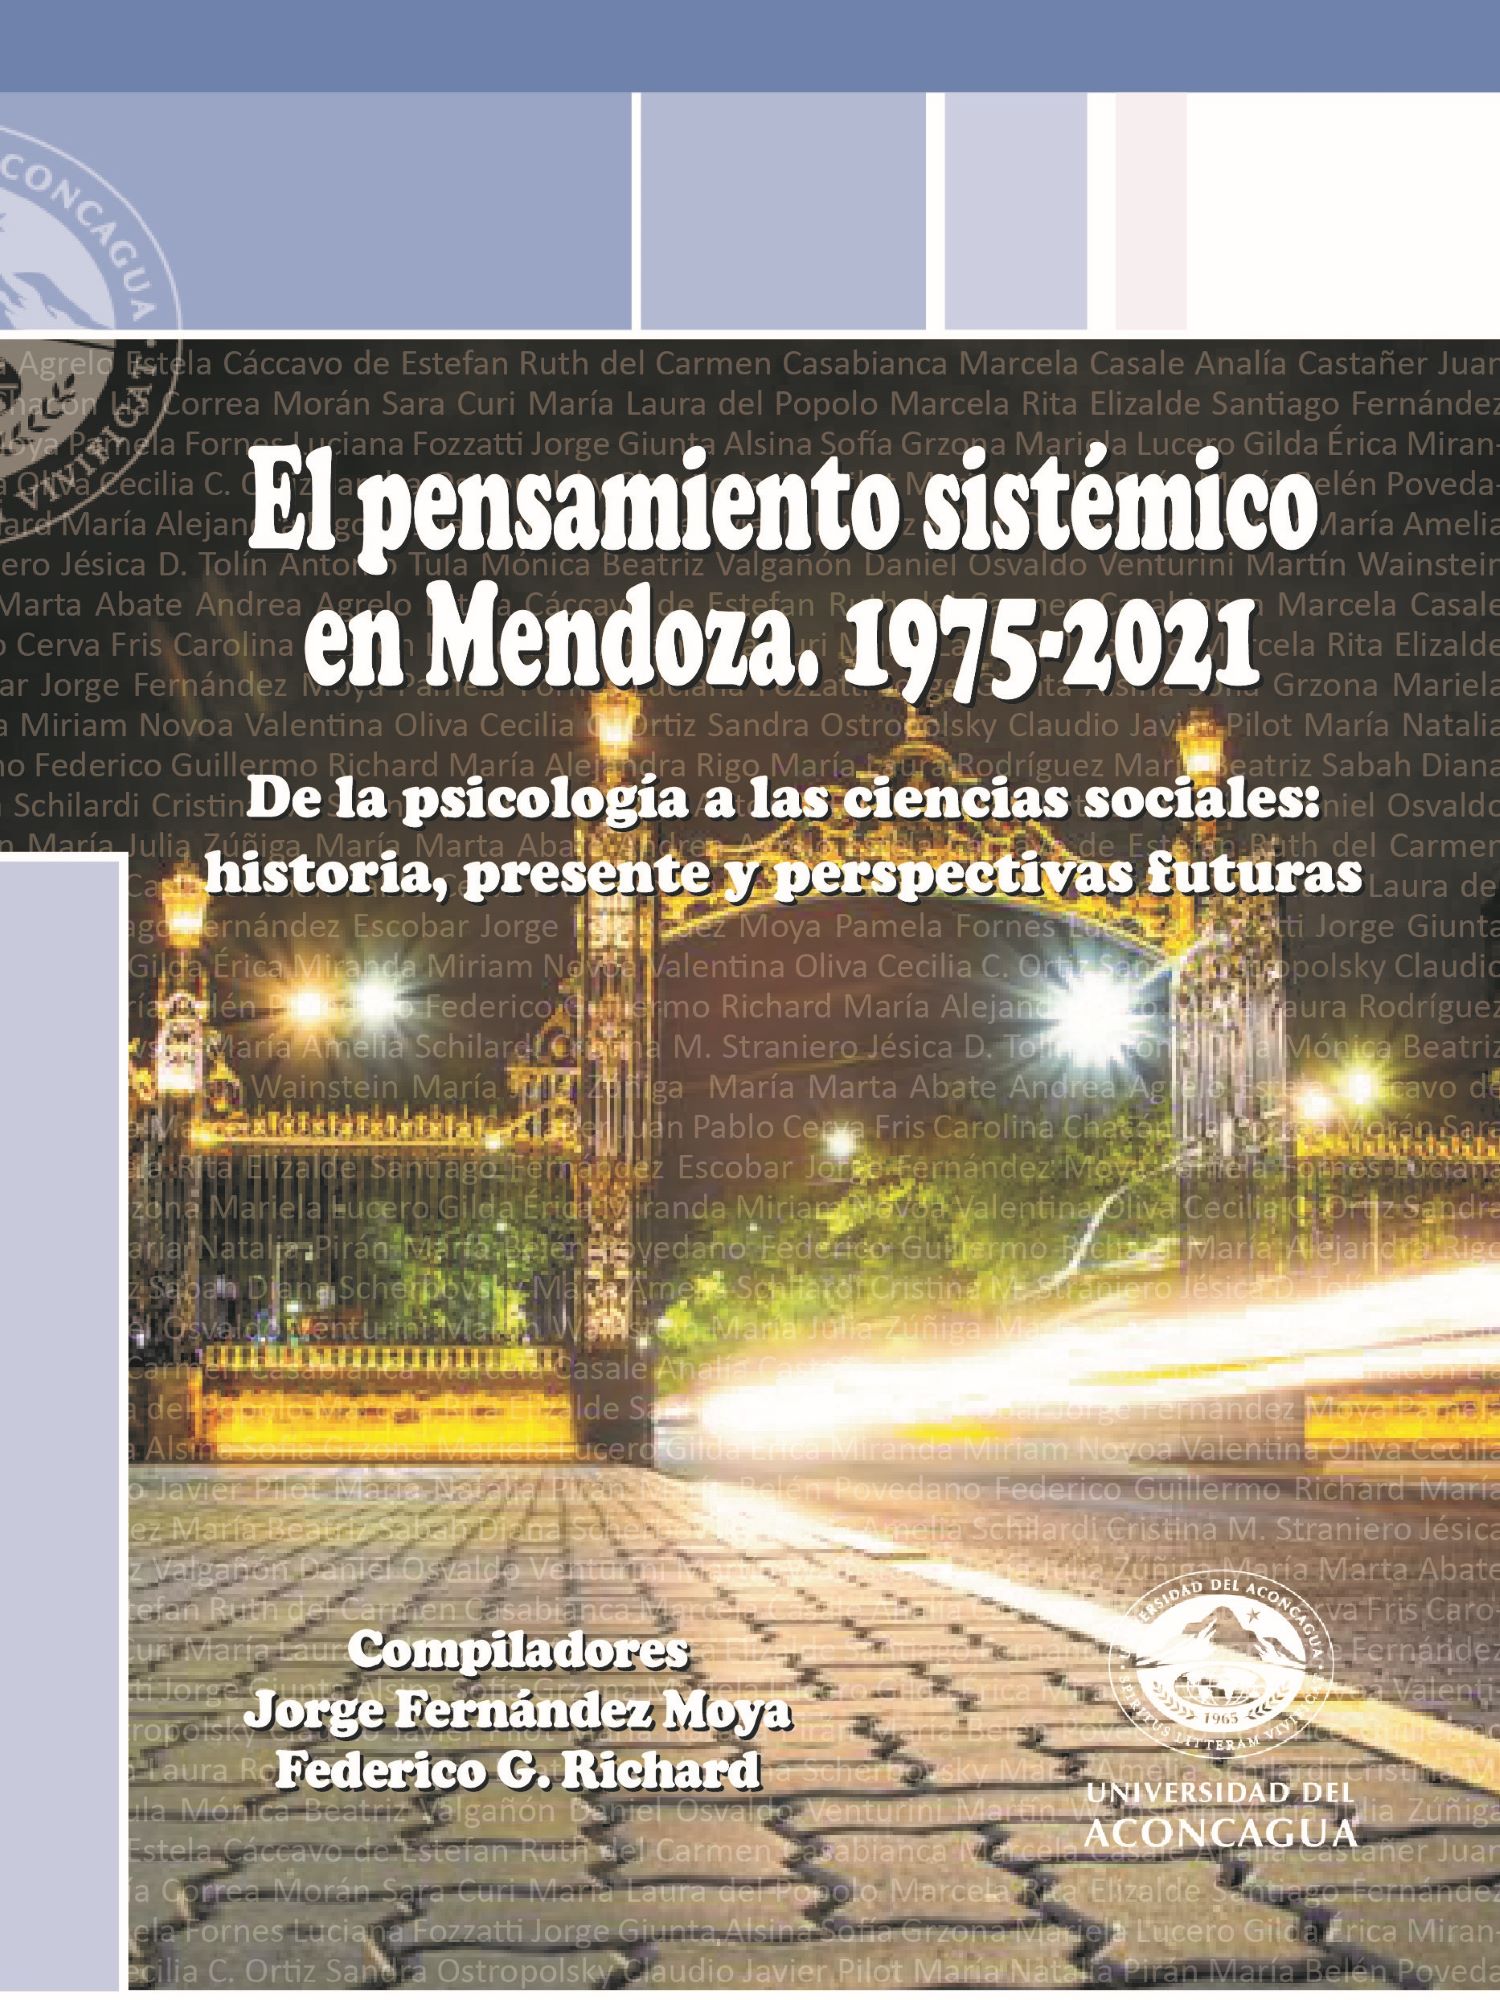 El pensamientos sistémico en Mendoza. 1975-2021